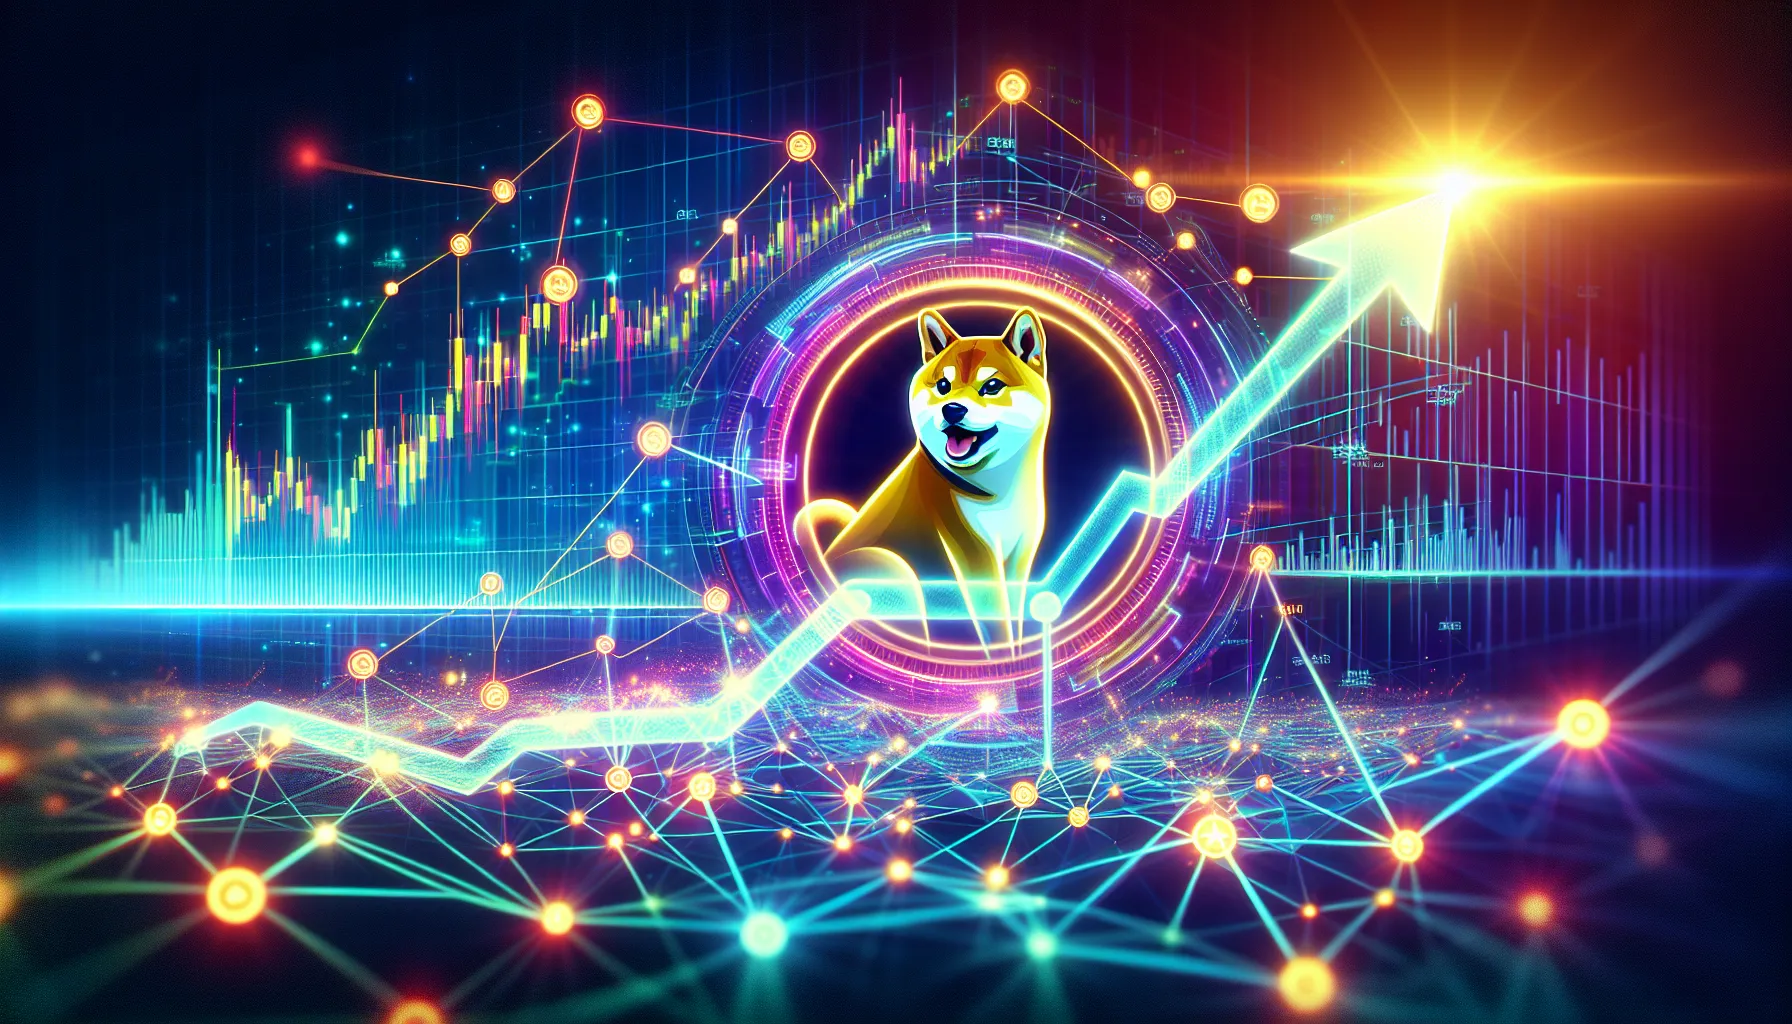 Dogecoin gewinnt inmitten erhöhter Netzwerkaktivität und positiver Marktstimmung an Dynamik